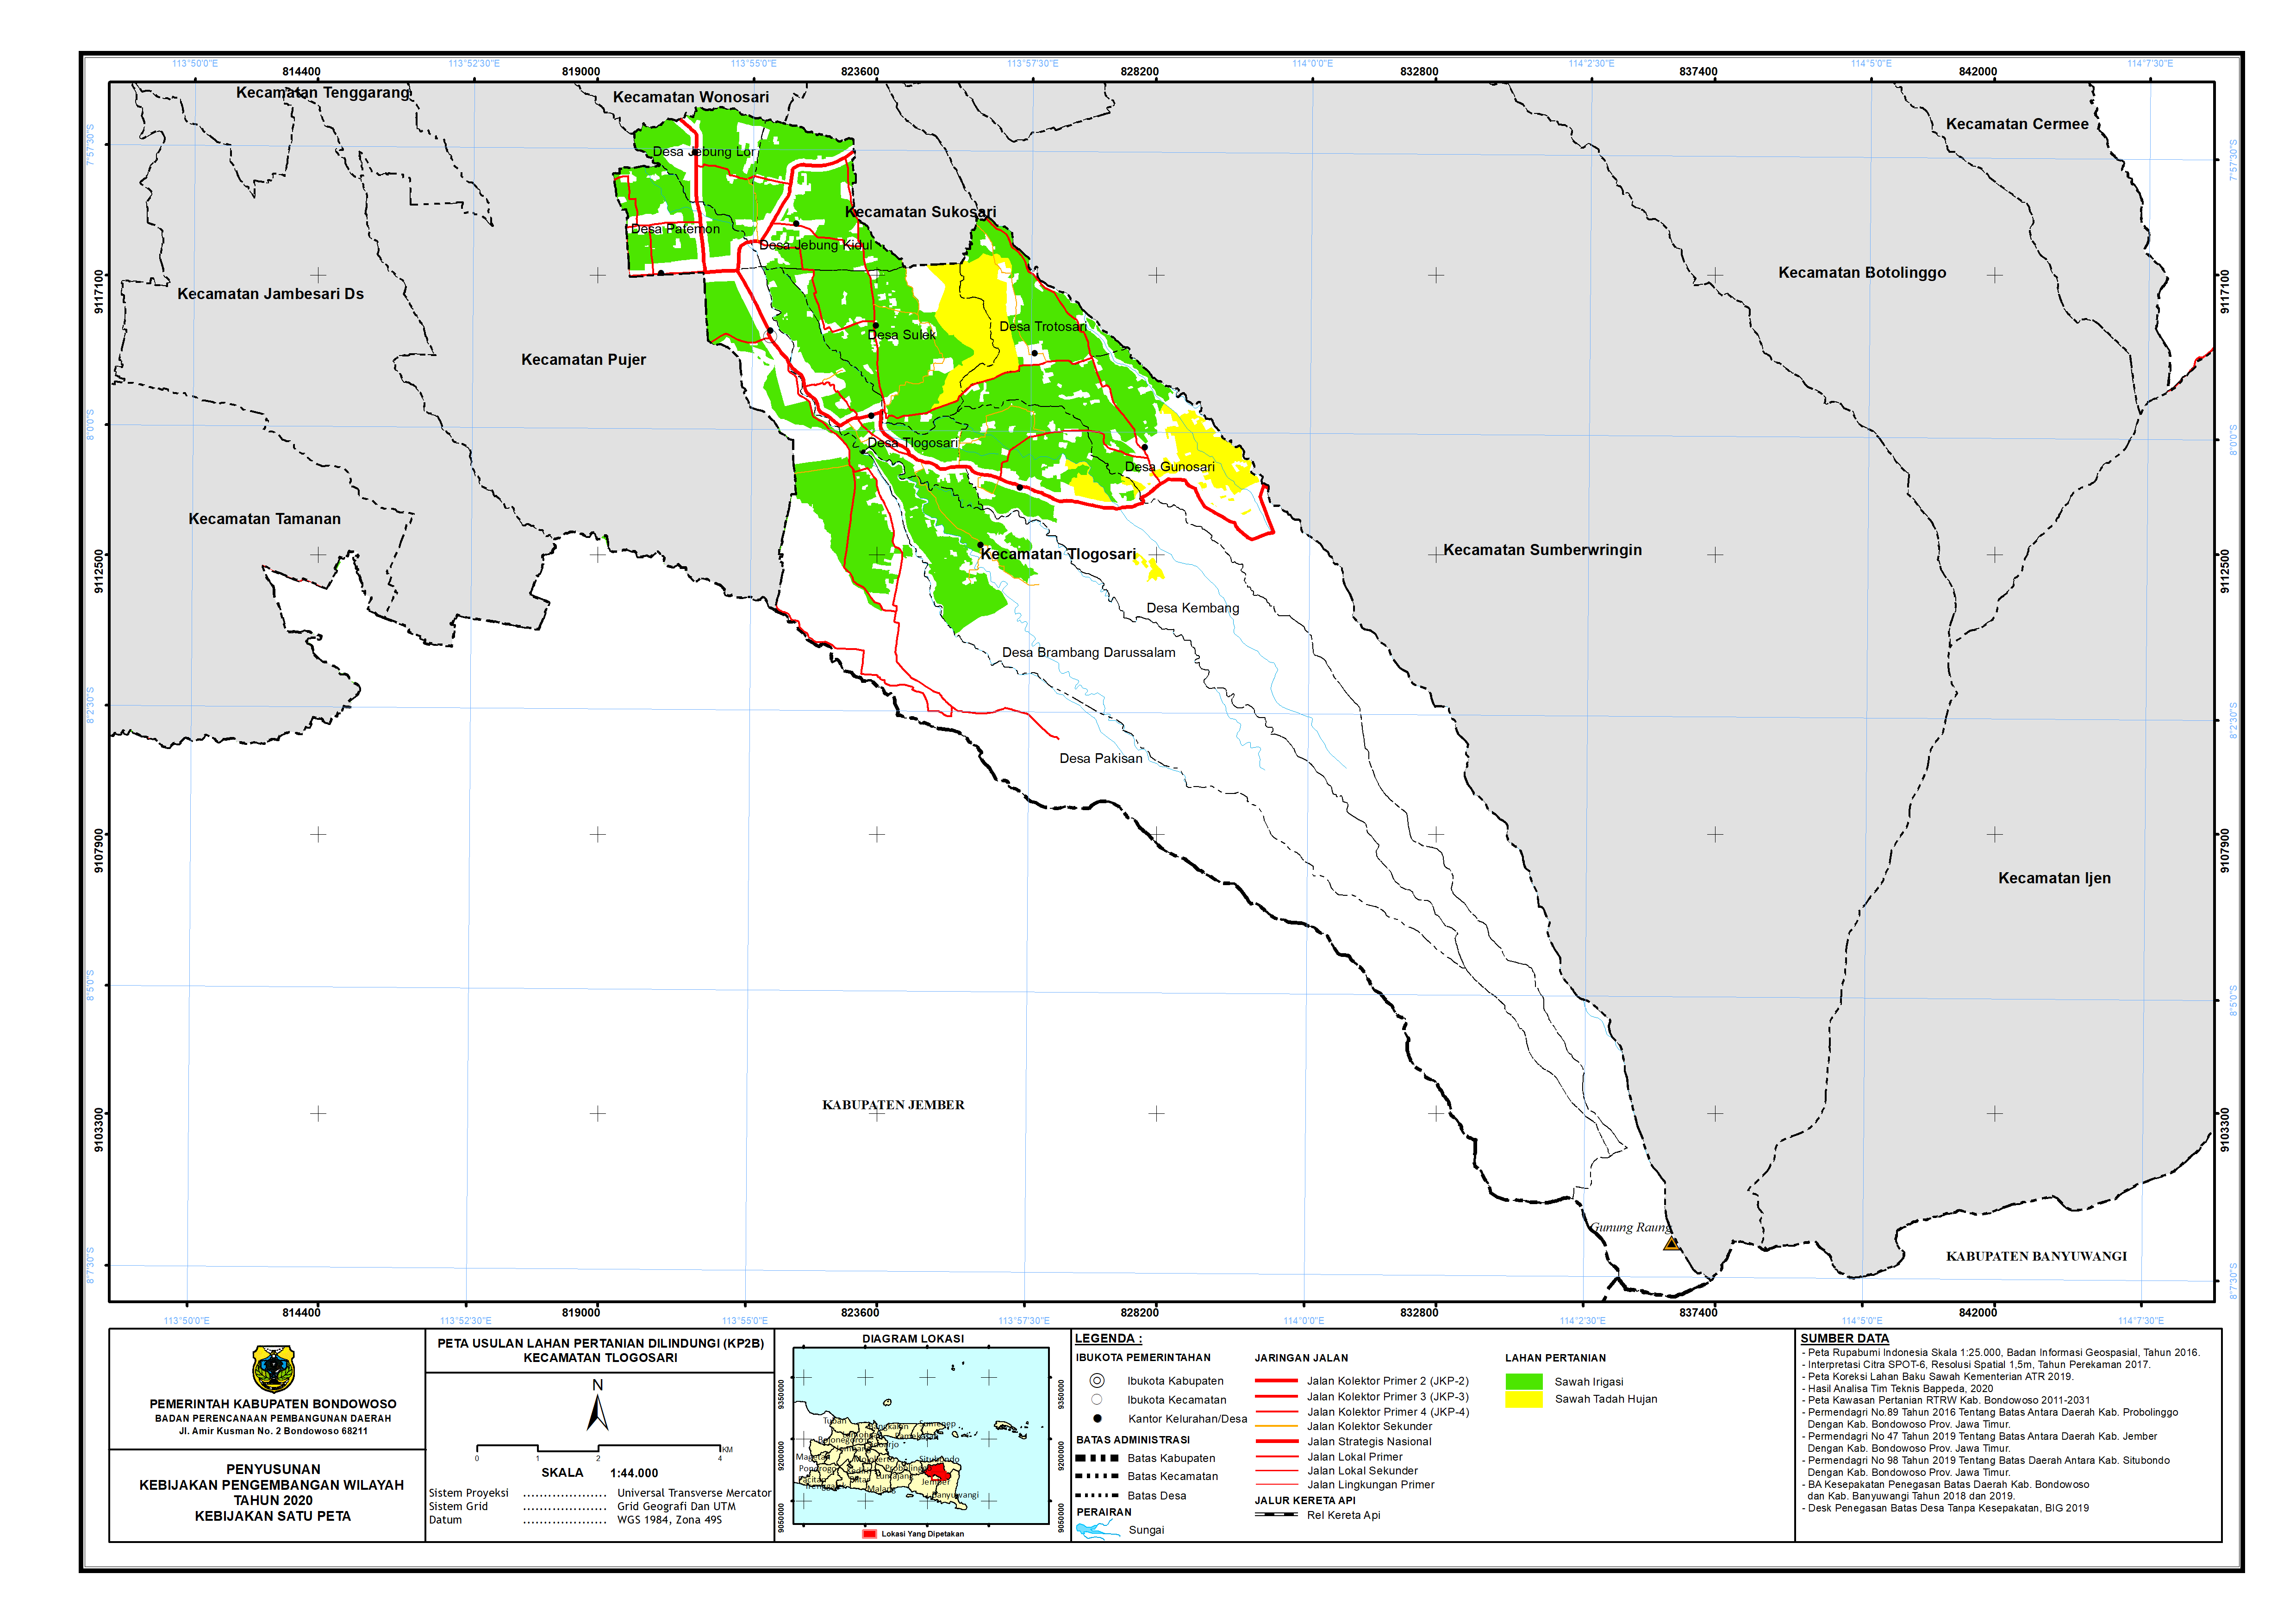 Peta Usulan Lahan Pertanian  Dilindungi Kecamatan Tlogosari.png